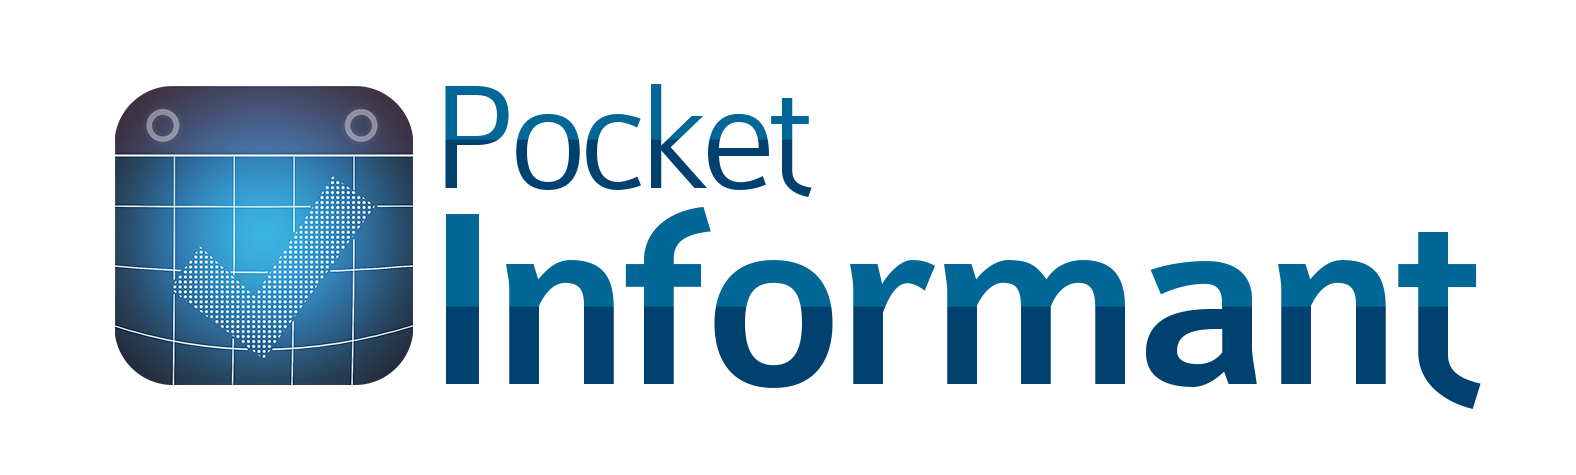 Pocket Informant